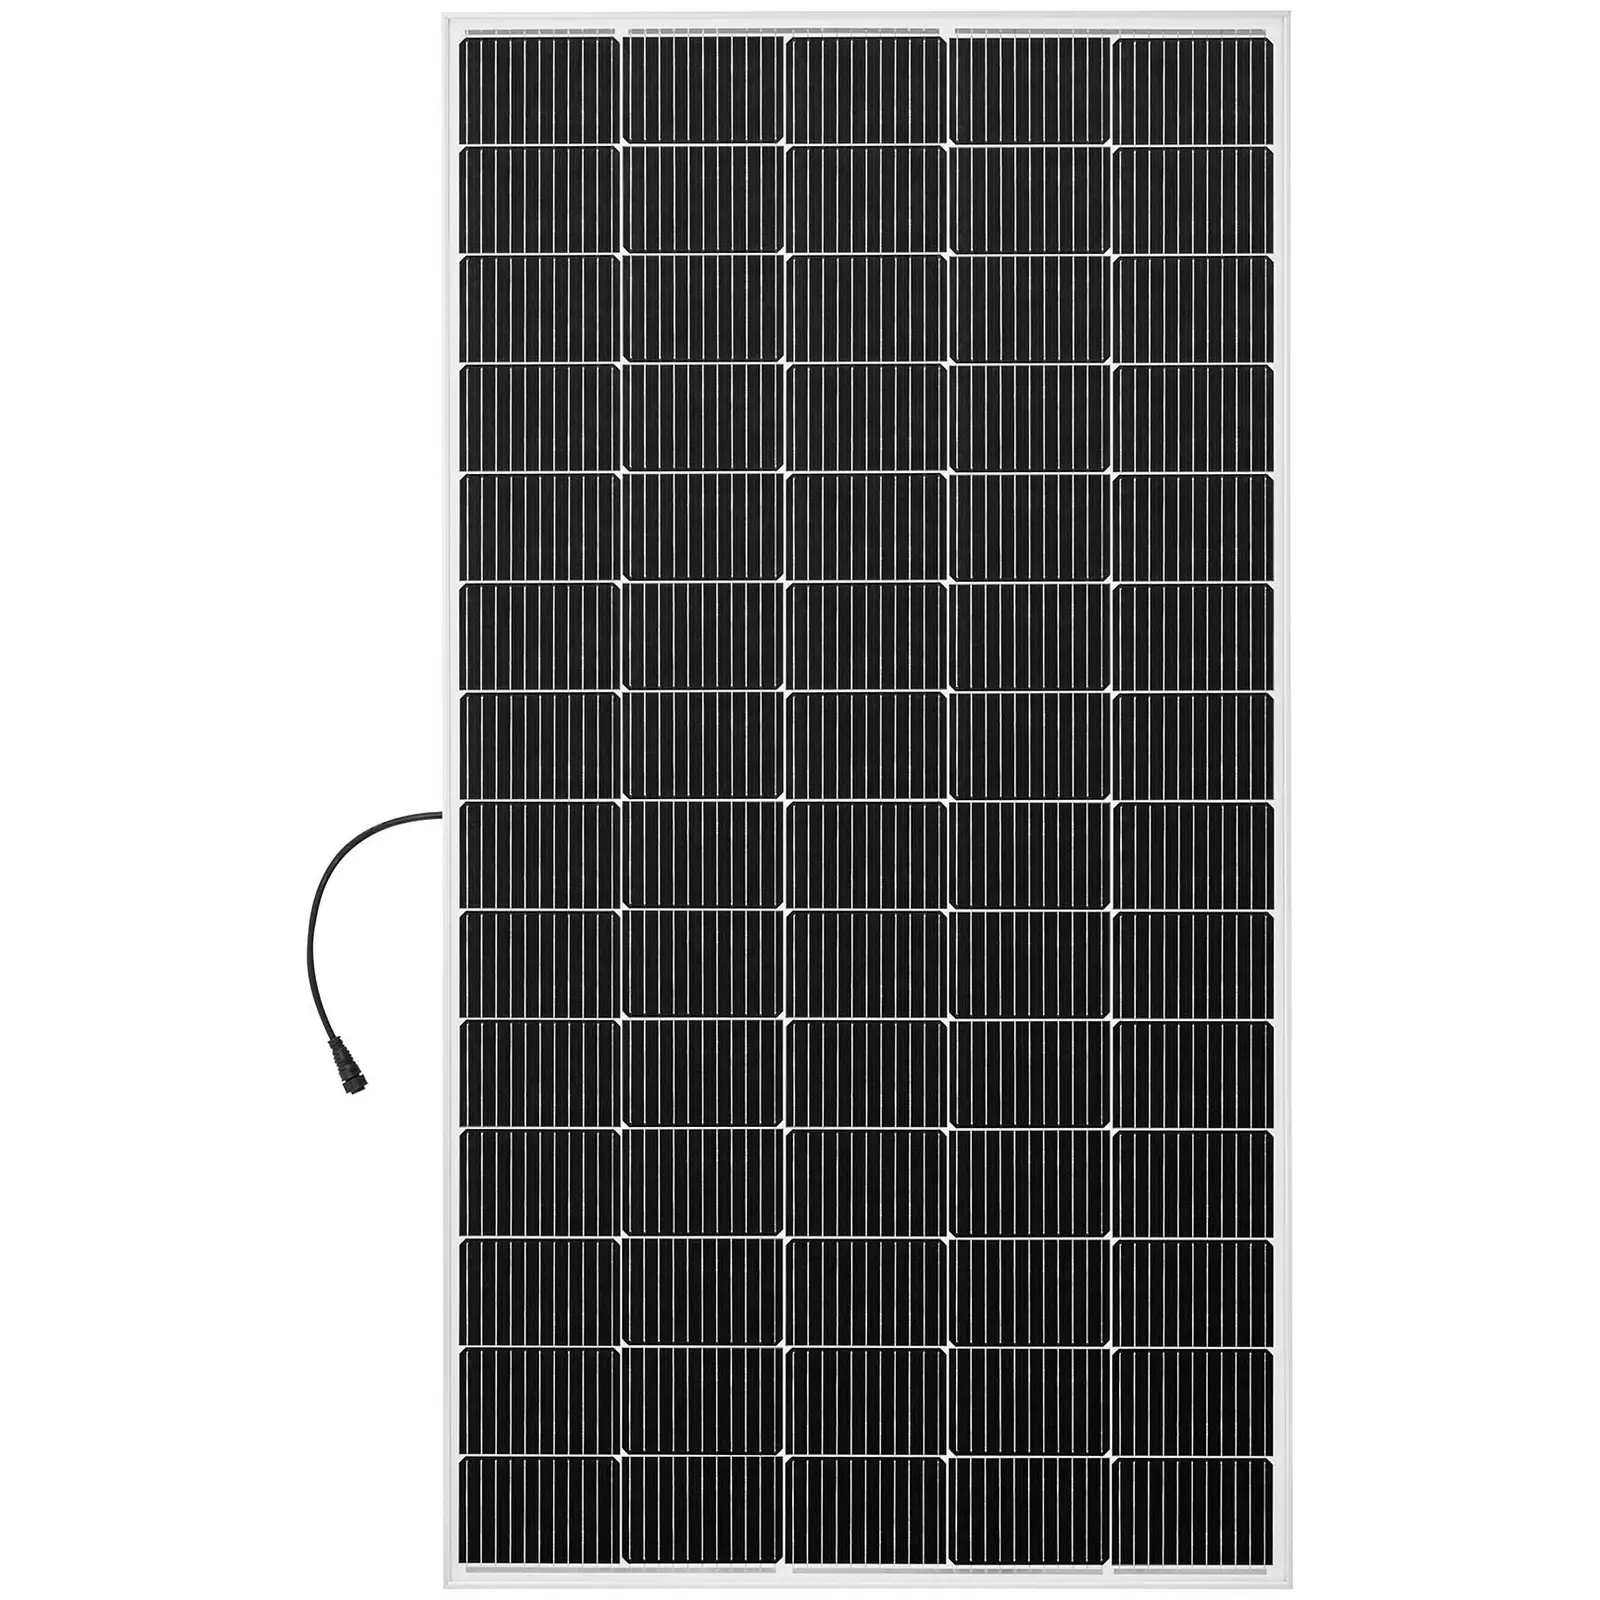 Erkély napelem rendszer - 300 W - monokristályos panel - csatlakoztatható teljes készlet 